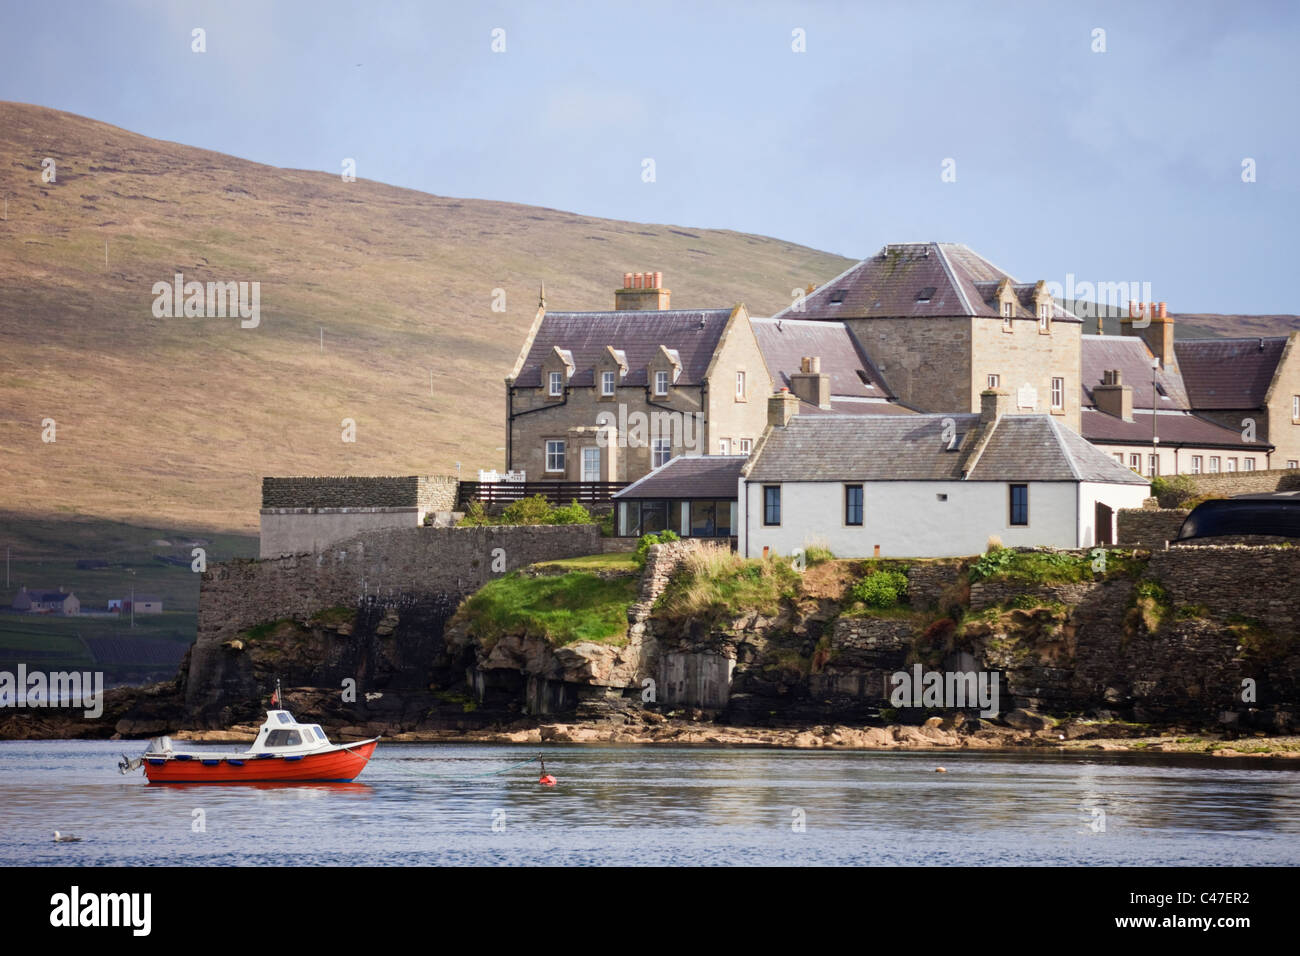 Waterfront-Gebäude auf der Knowe mit Andersons Witwen Häuser mit Blick auf Bressay Ton. Lerwick Shetland Inseln Schottland UK British Isles. Stockfoto